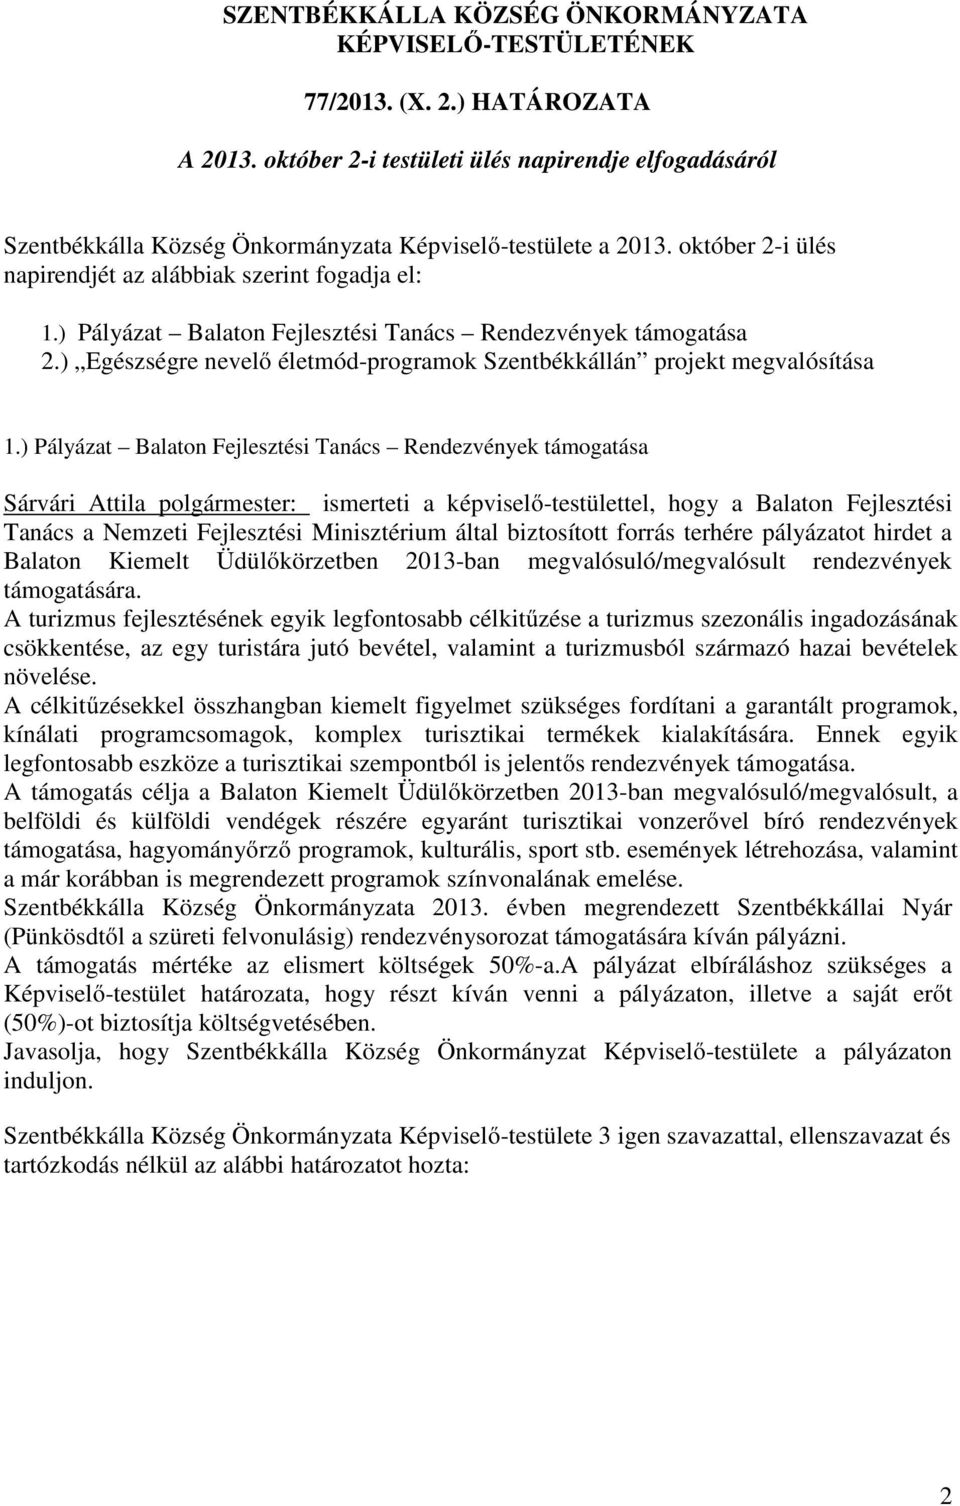 biztosított forrás terhére pályázatot hirdet a Balaton Kiemelt Üdülőkörzetben 2013-ban megvalósuló/megvalósult rendezvények támogatására.